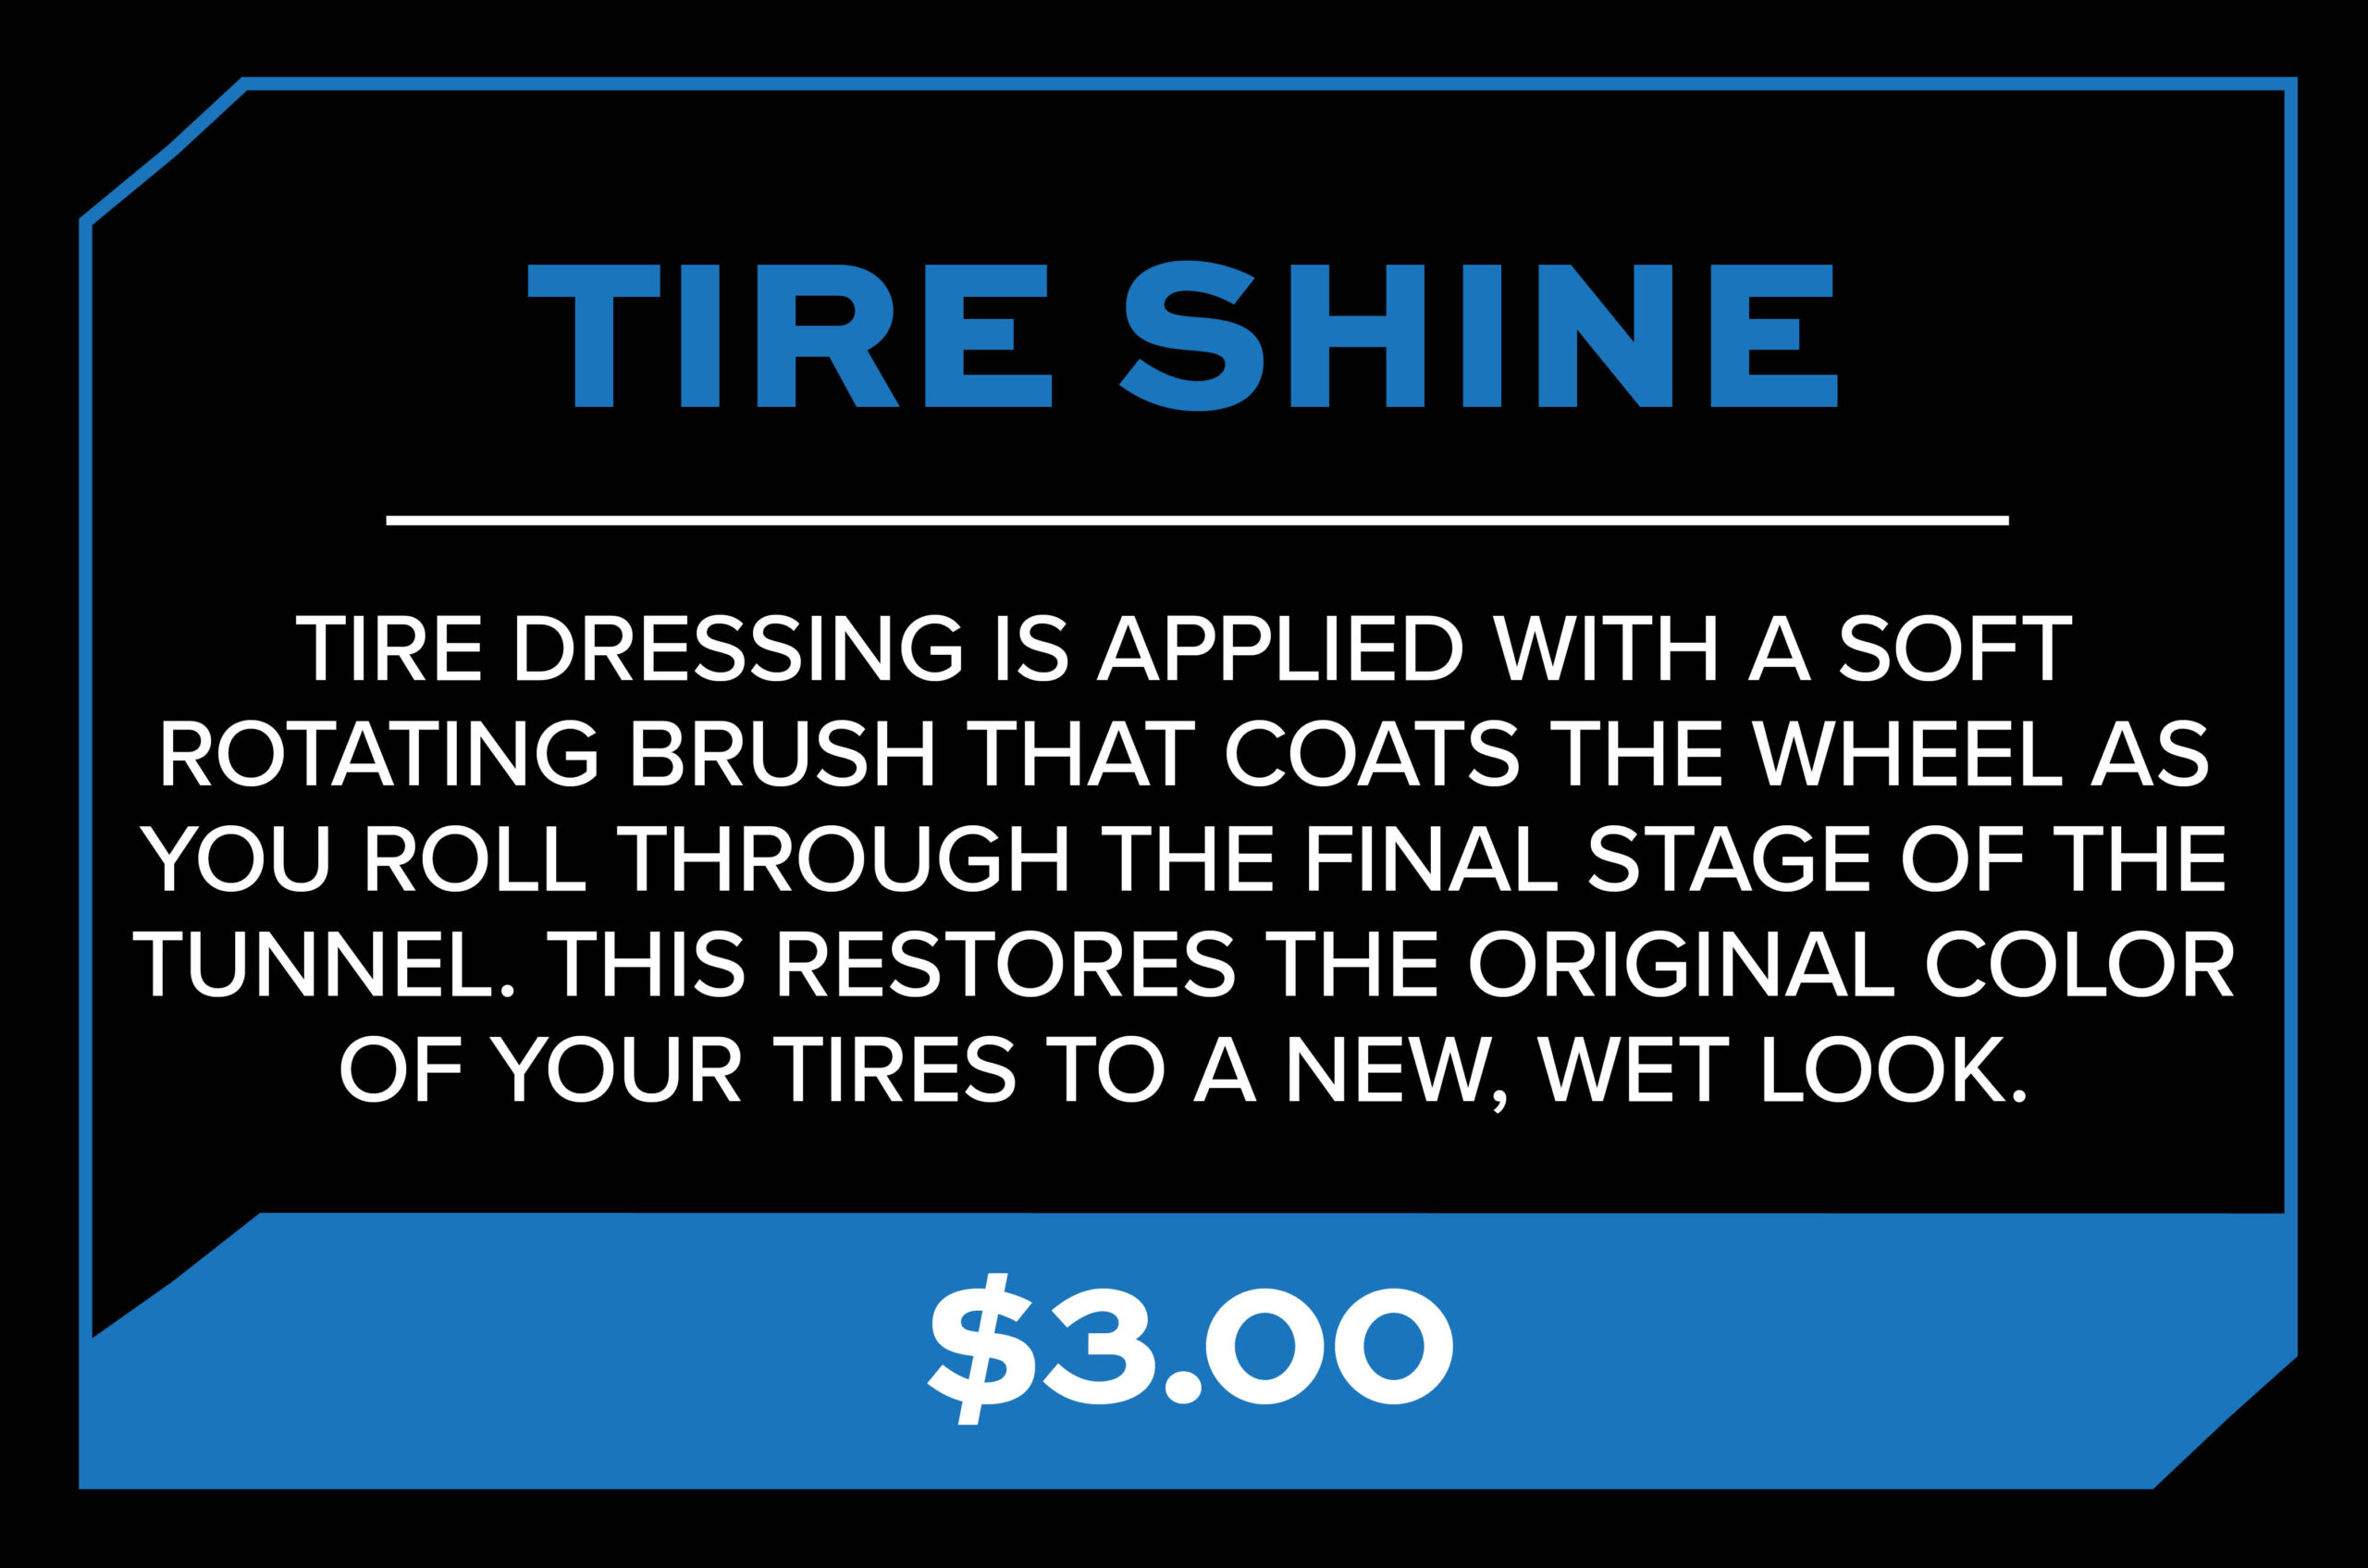 Tire Shine Description